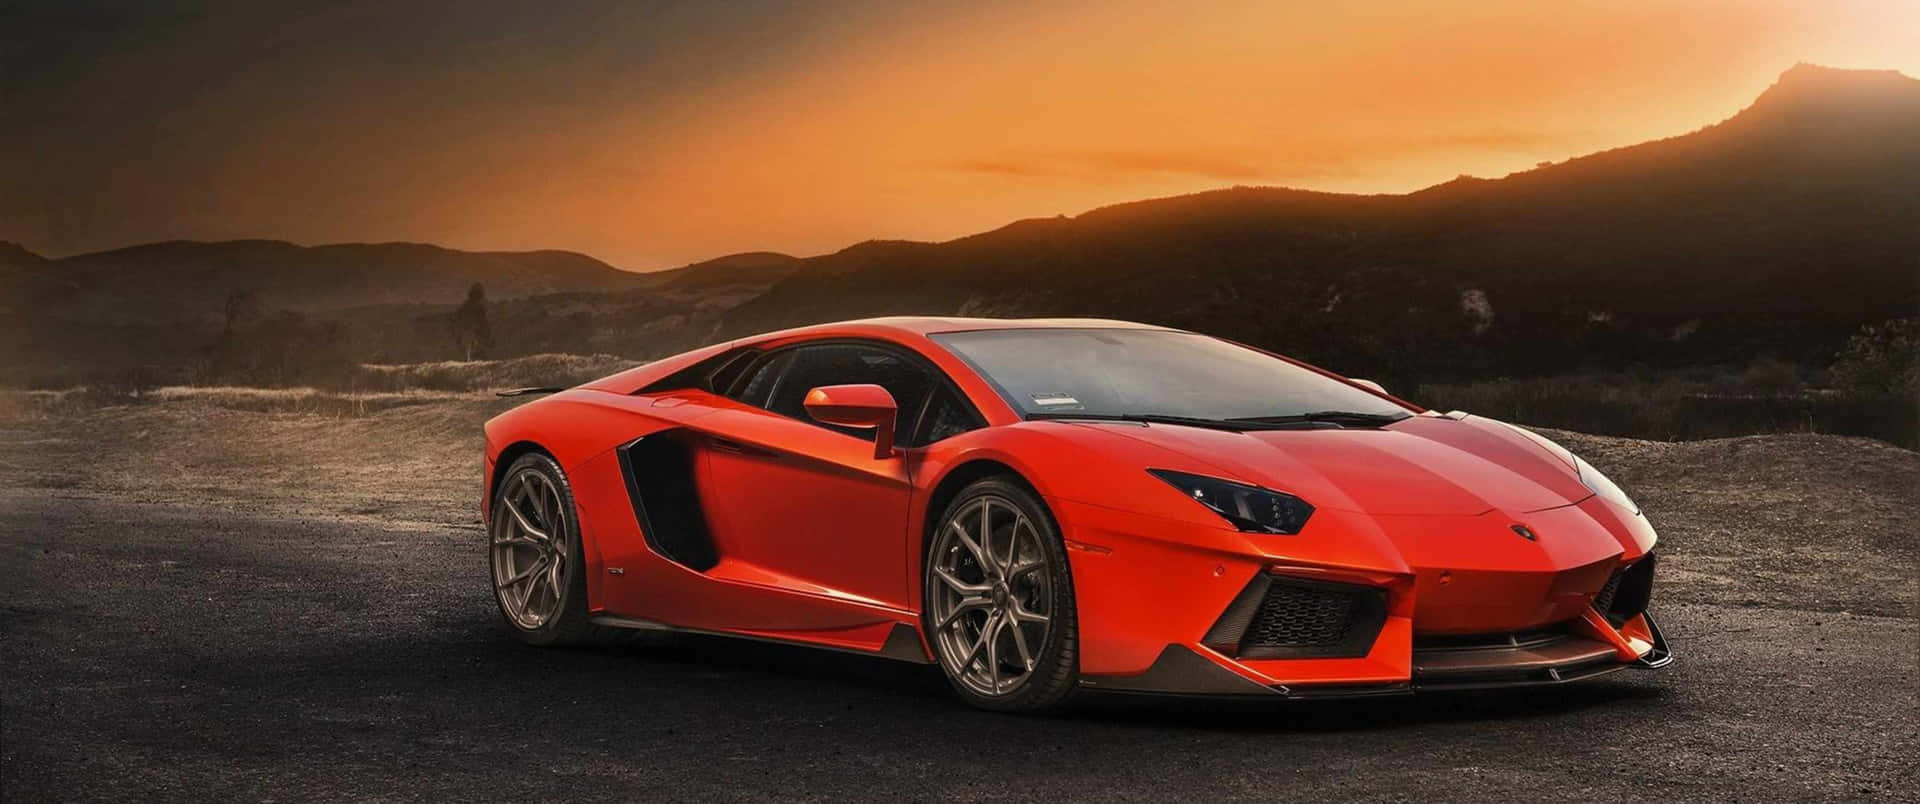 Sentila Velocità: Lamborghini 3440x1440p